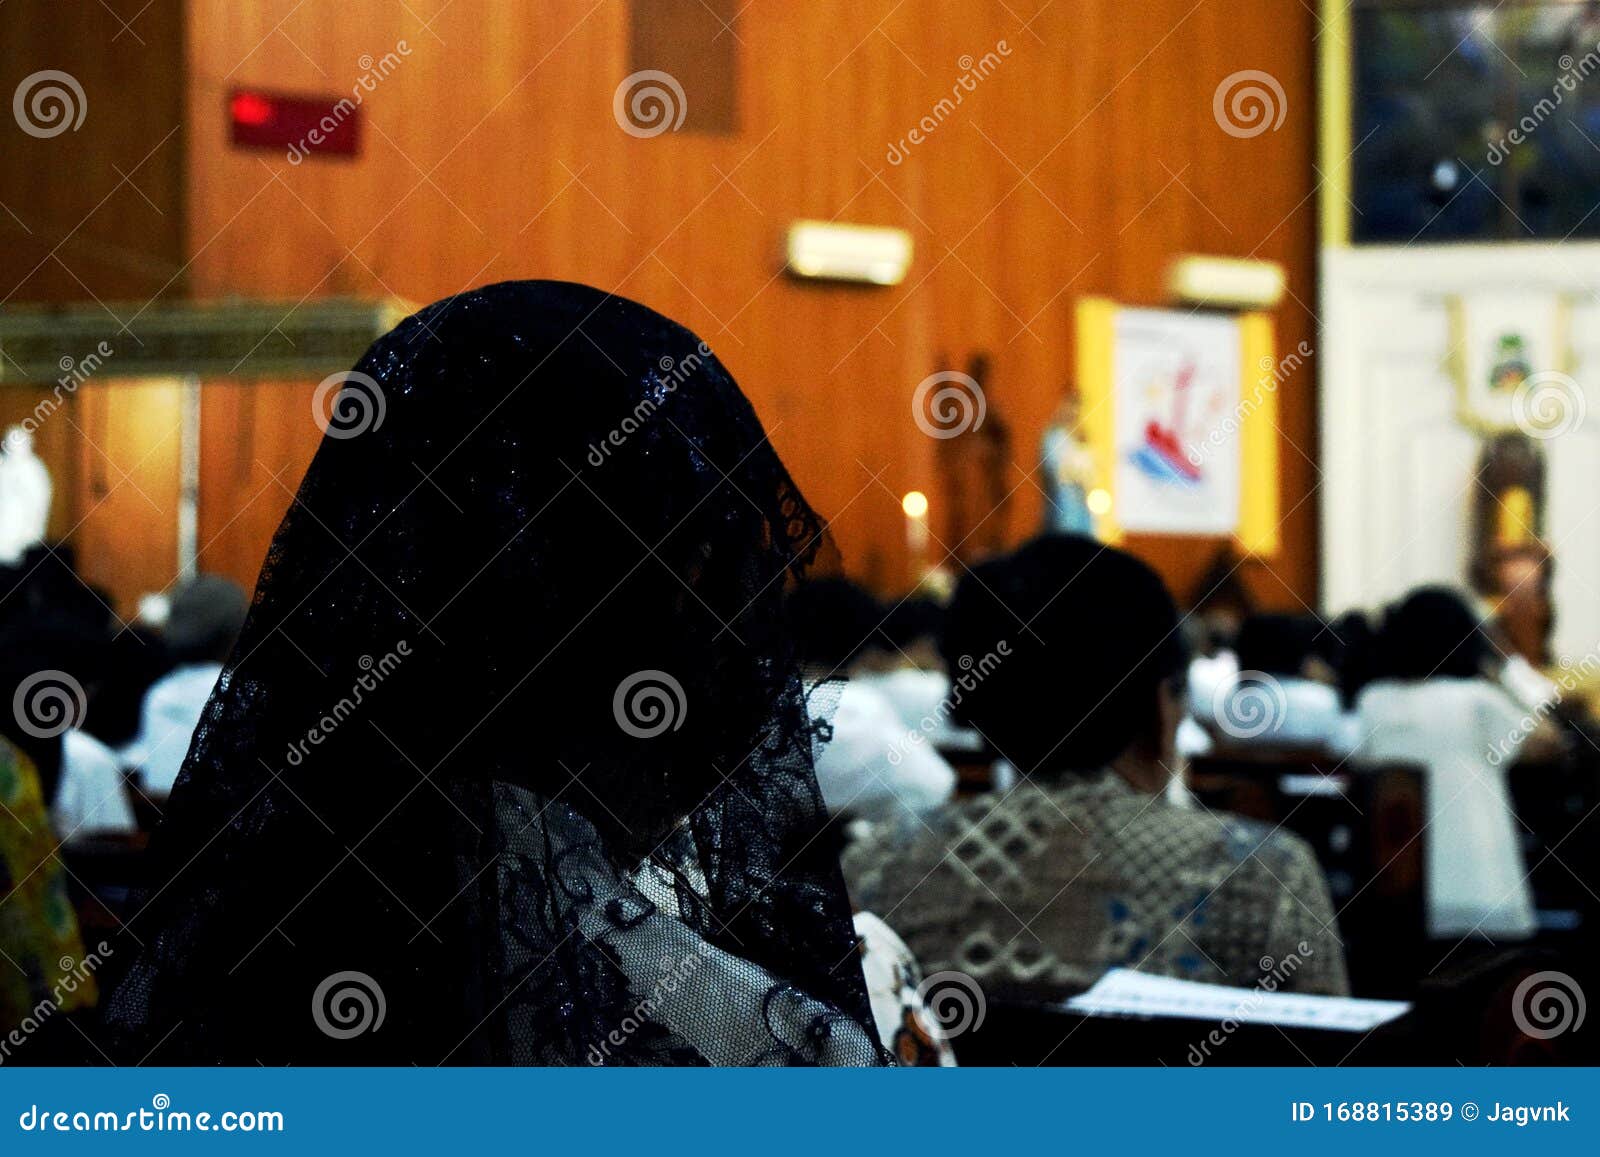 a woman wearing a black mantilla praying at church